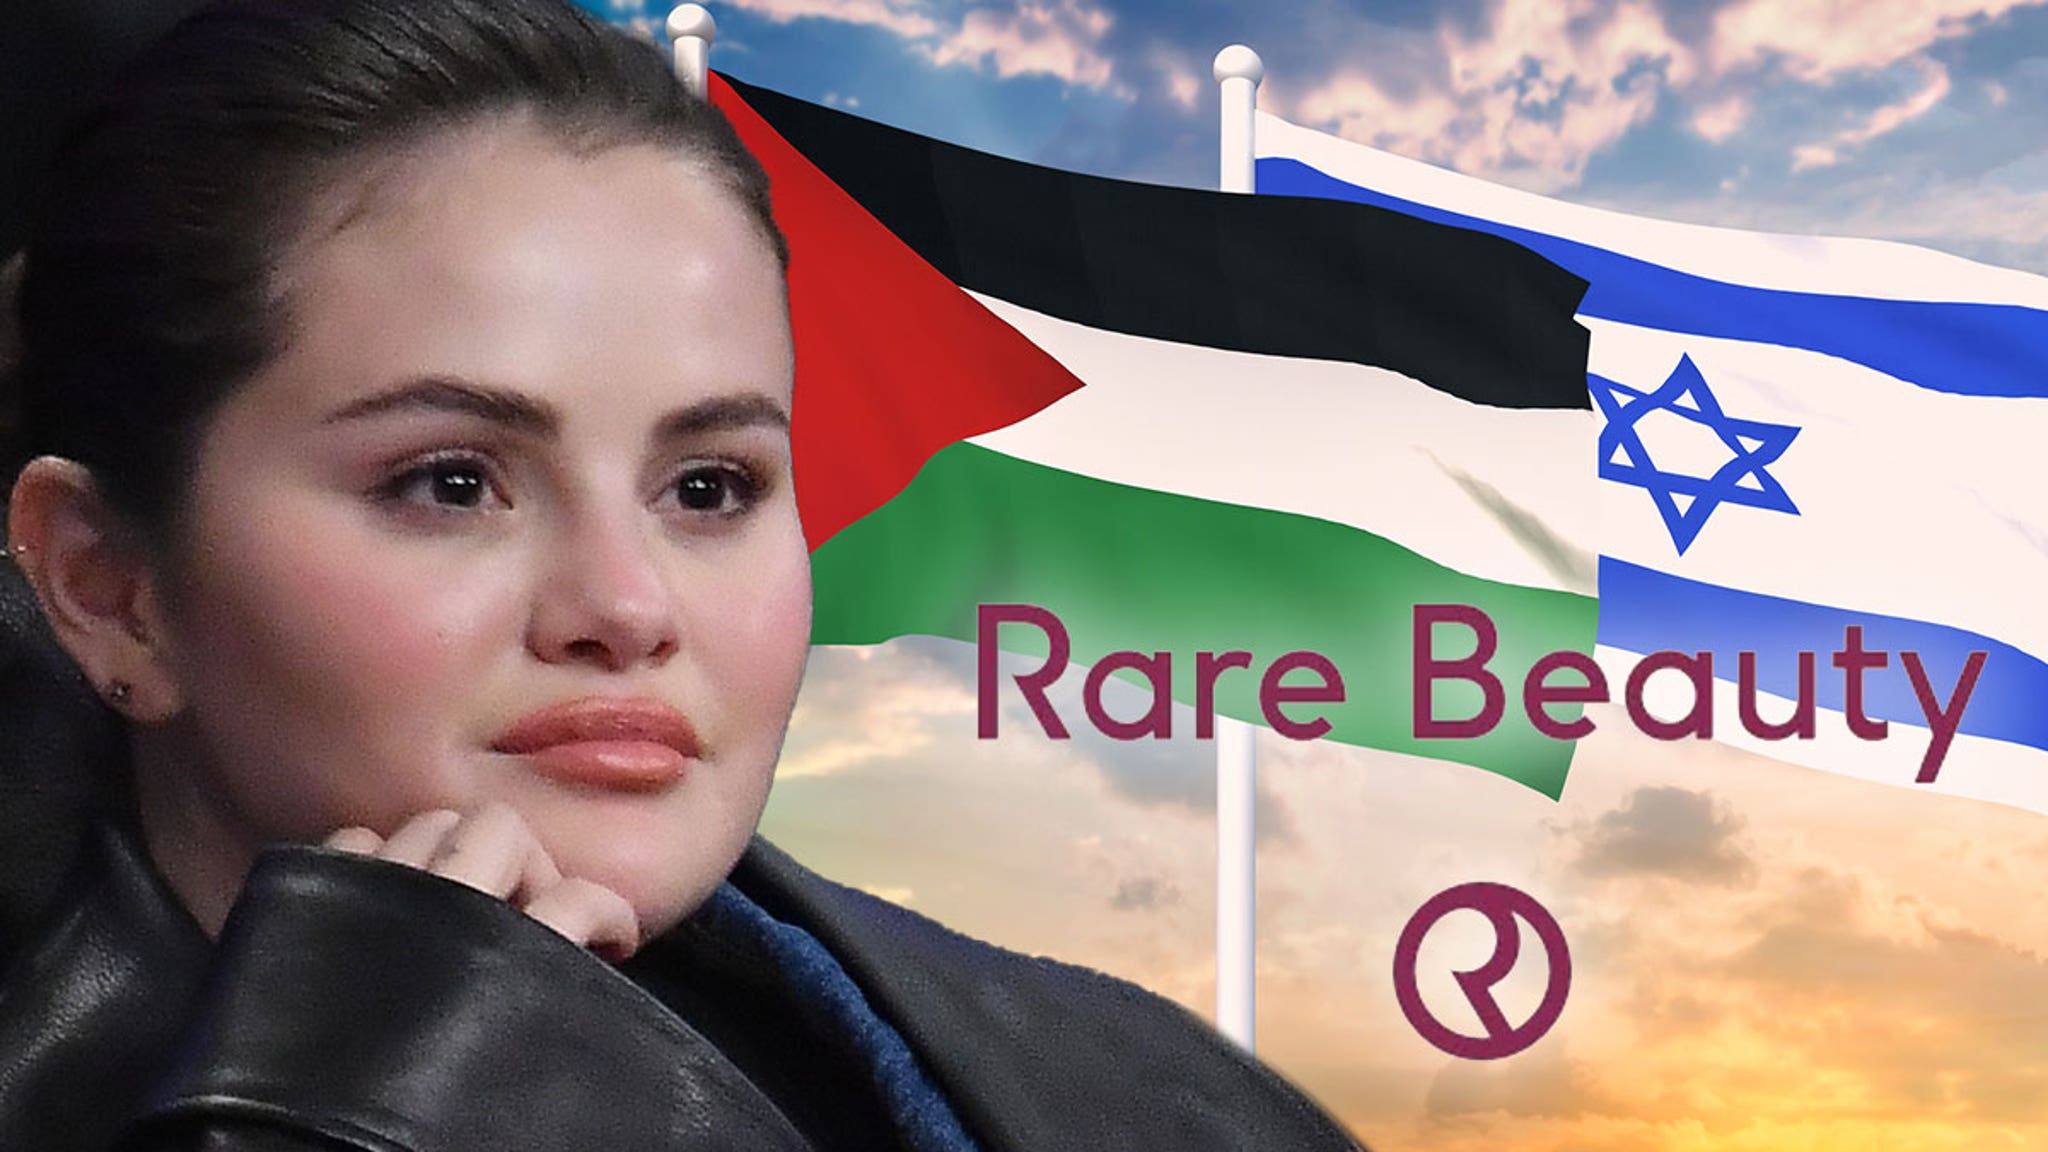 Photo of Das Schönheitsunternehmen von Selena Gomez nimmt gegenüber Israel und Palästina eine entschiedenere Haltung ein